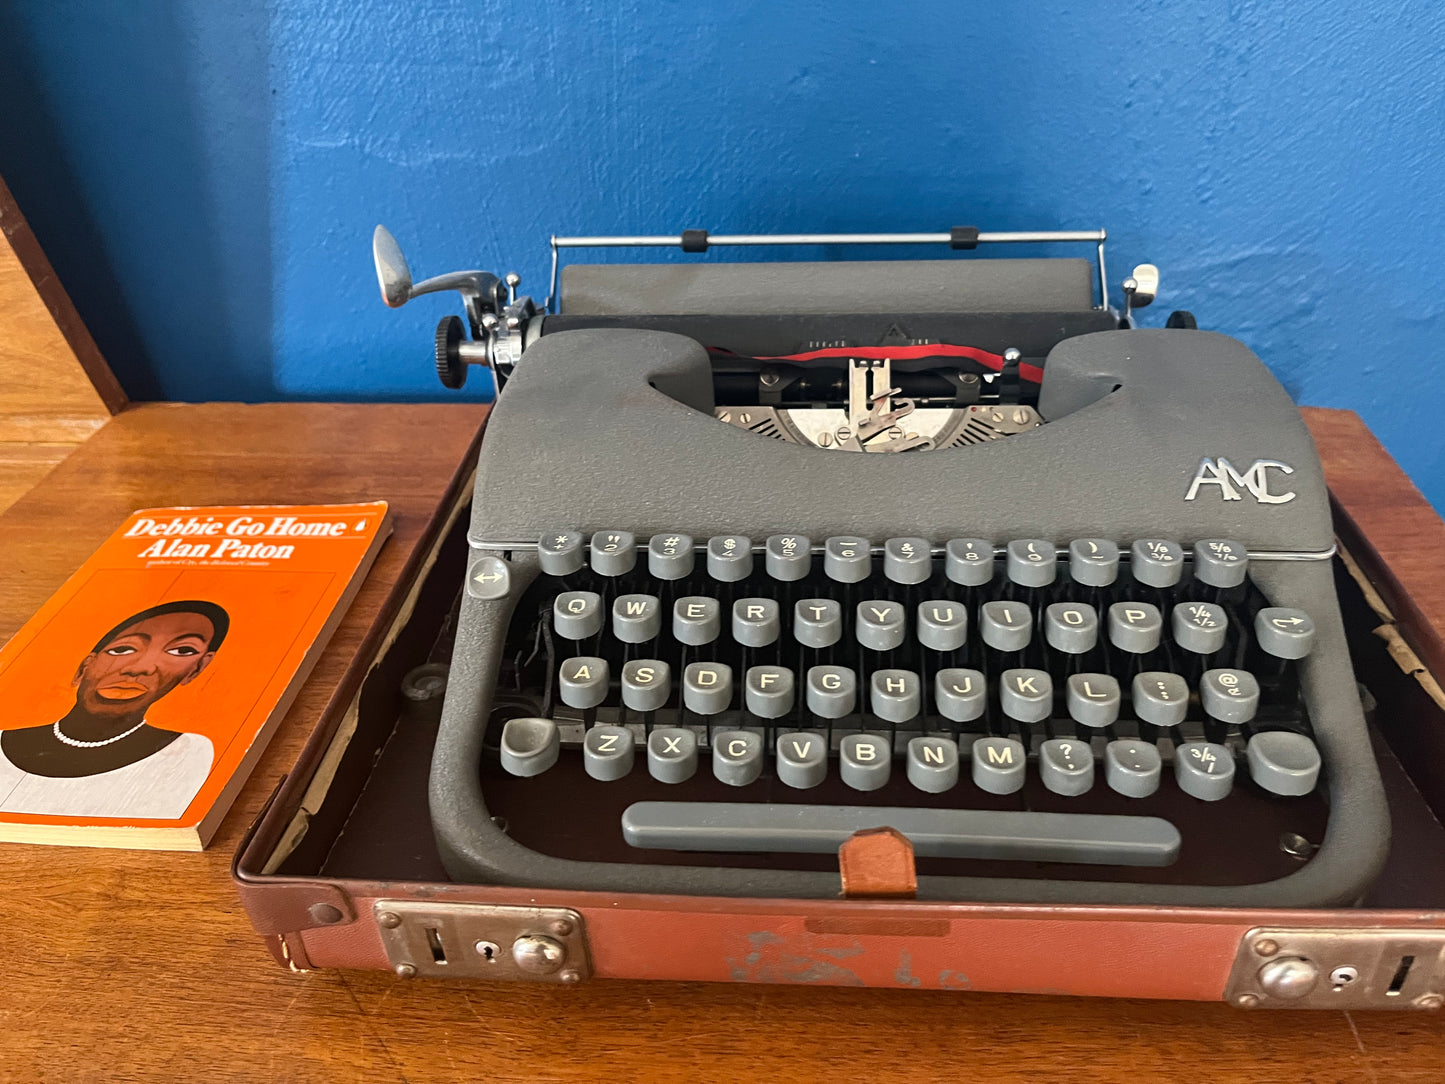 AMC Typewriter